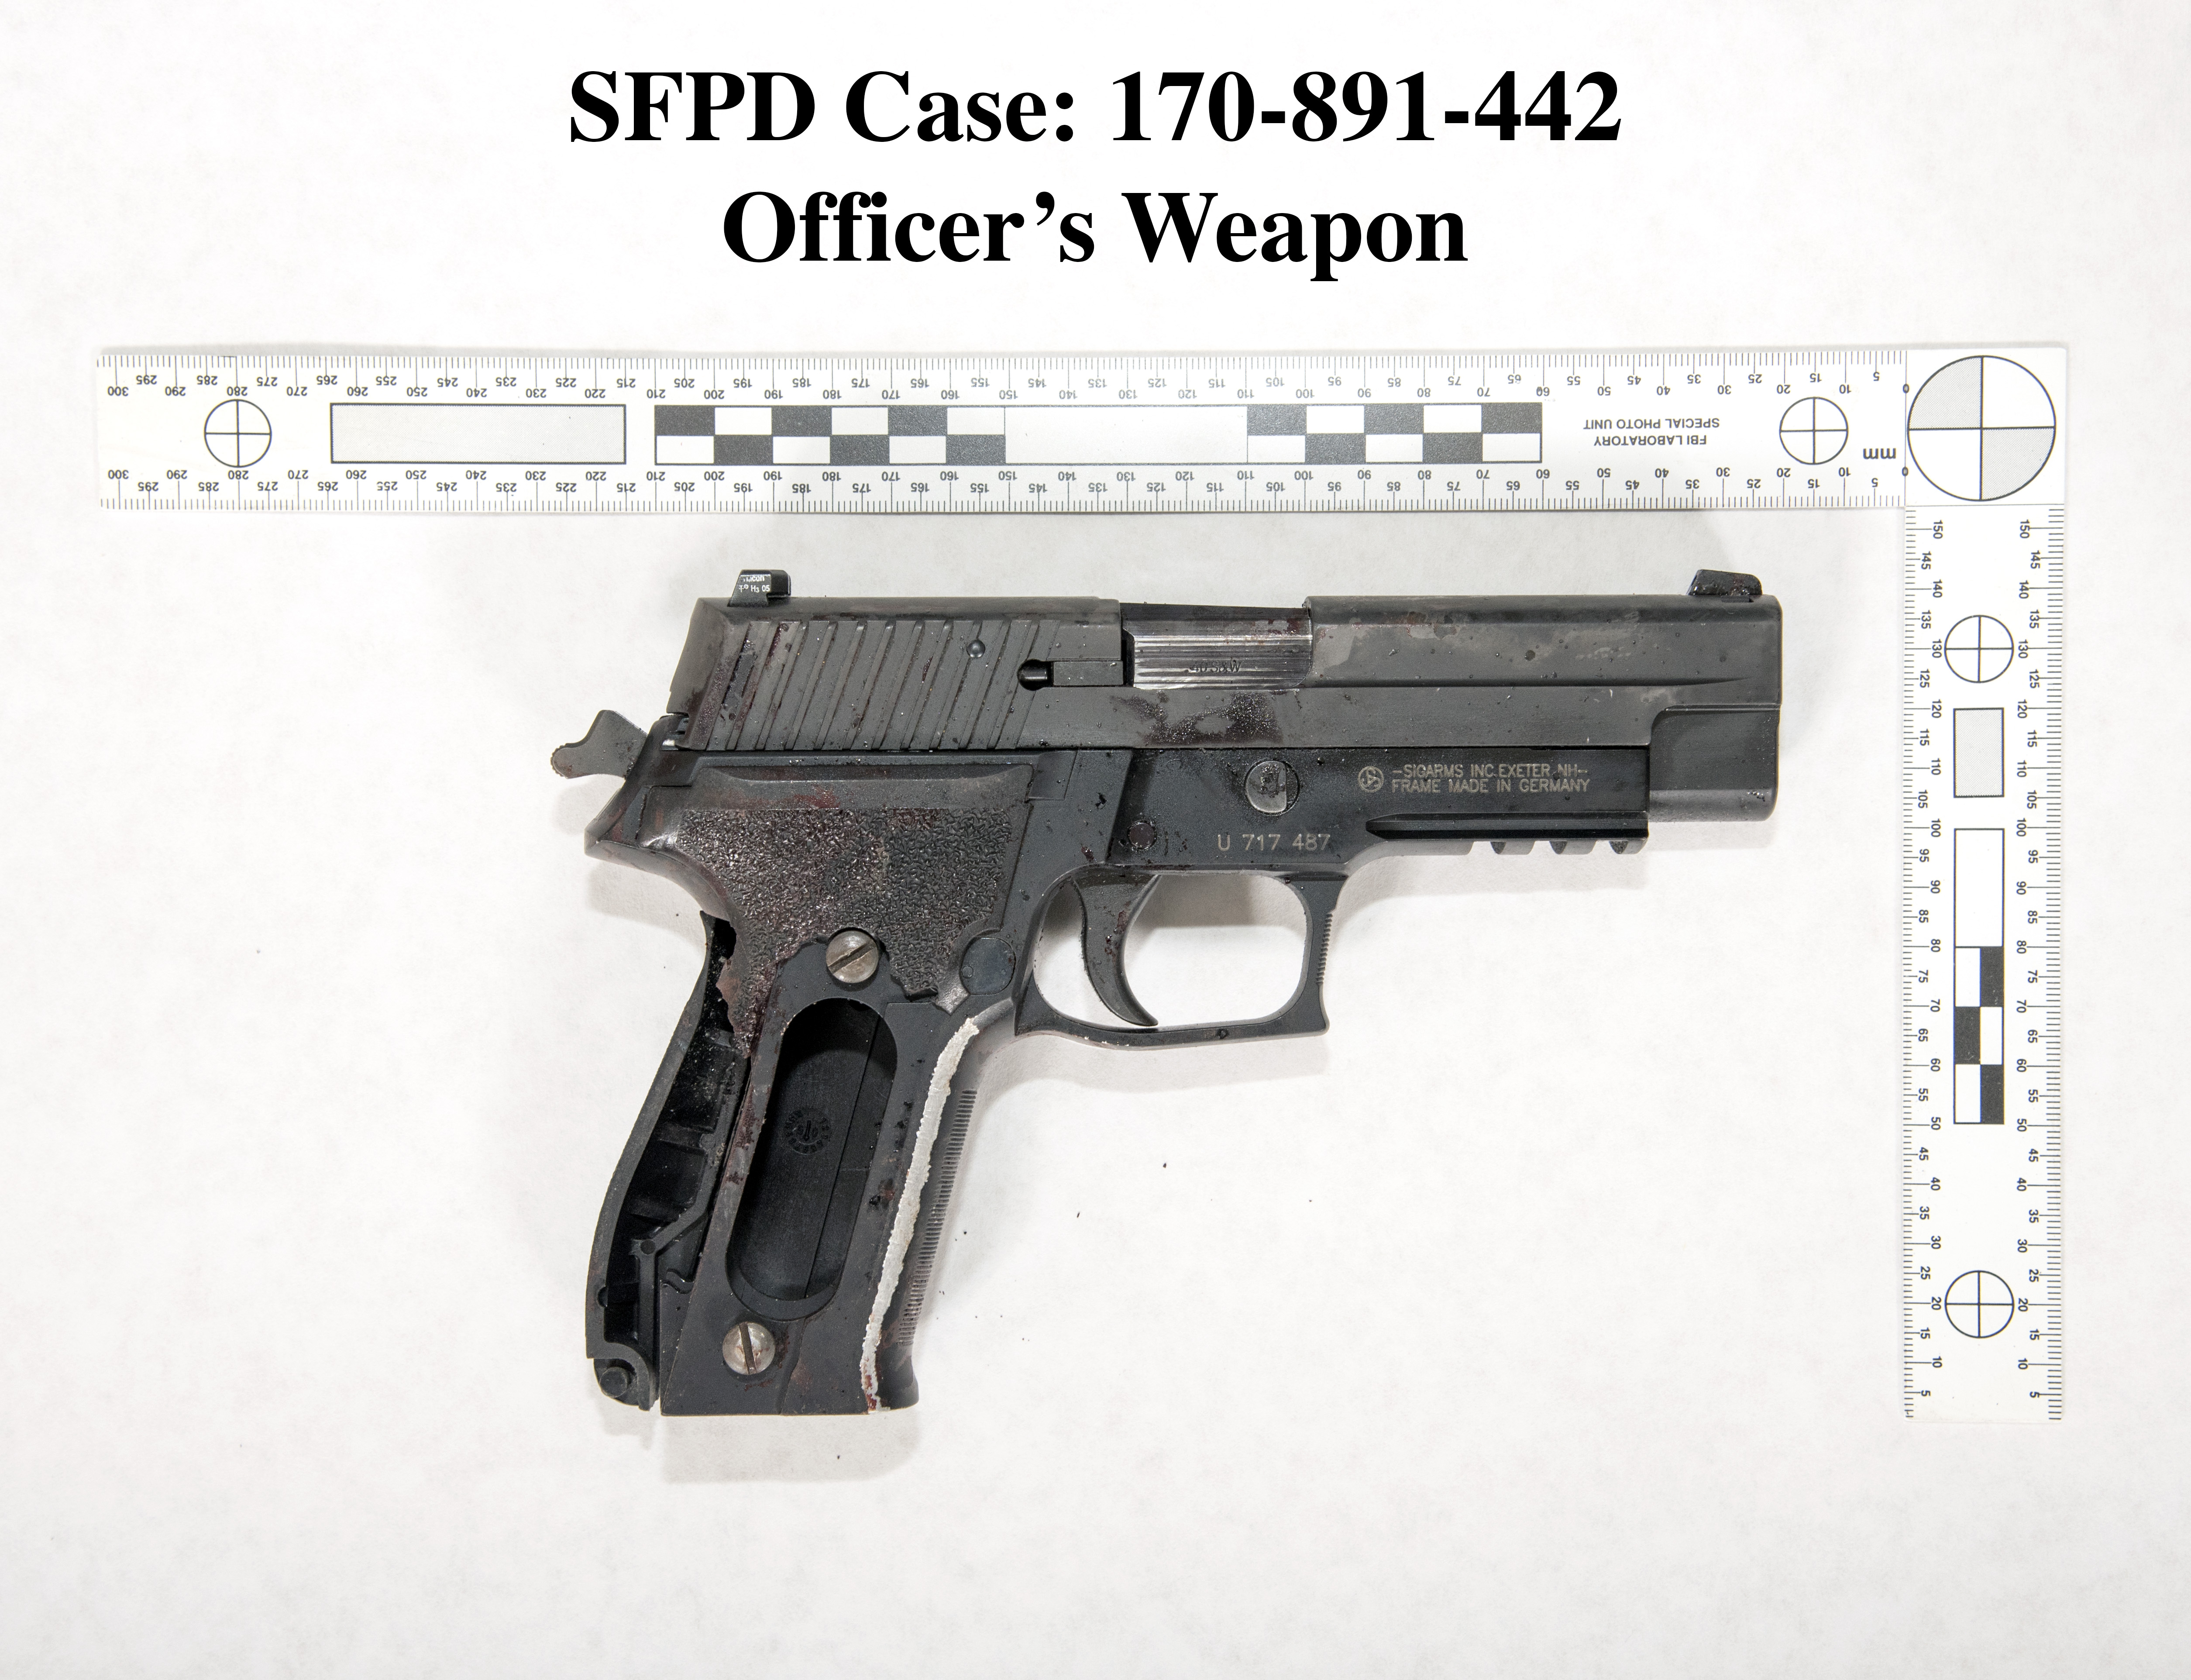 Officer's damaged firearm